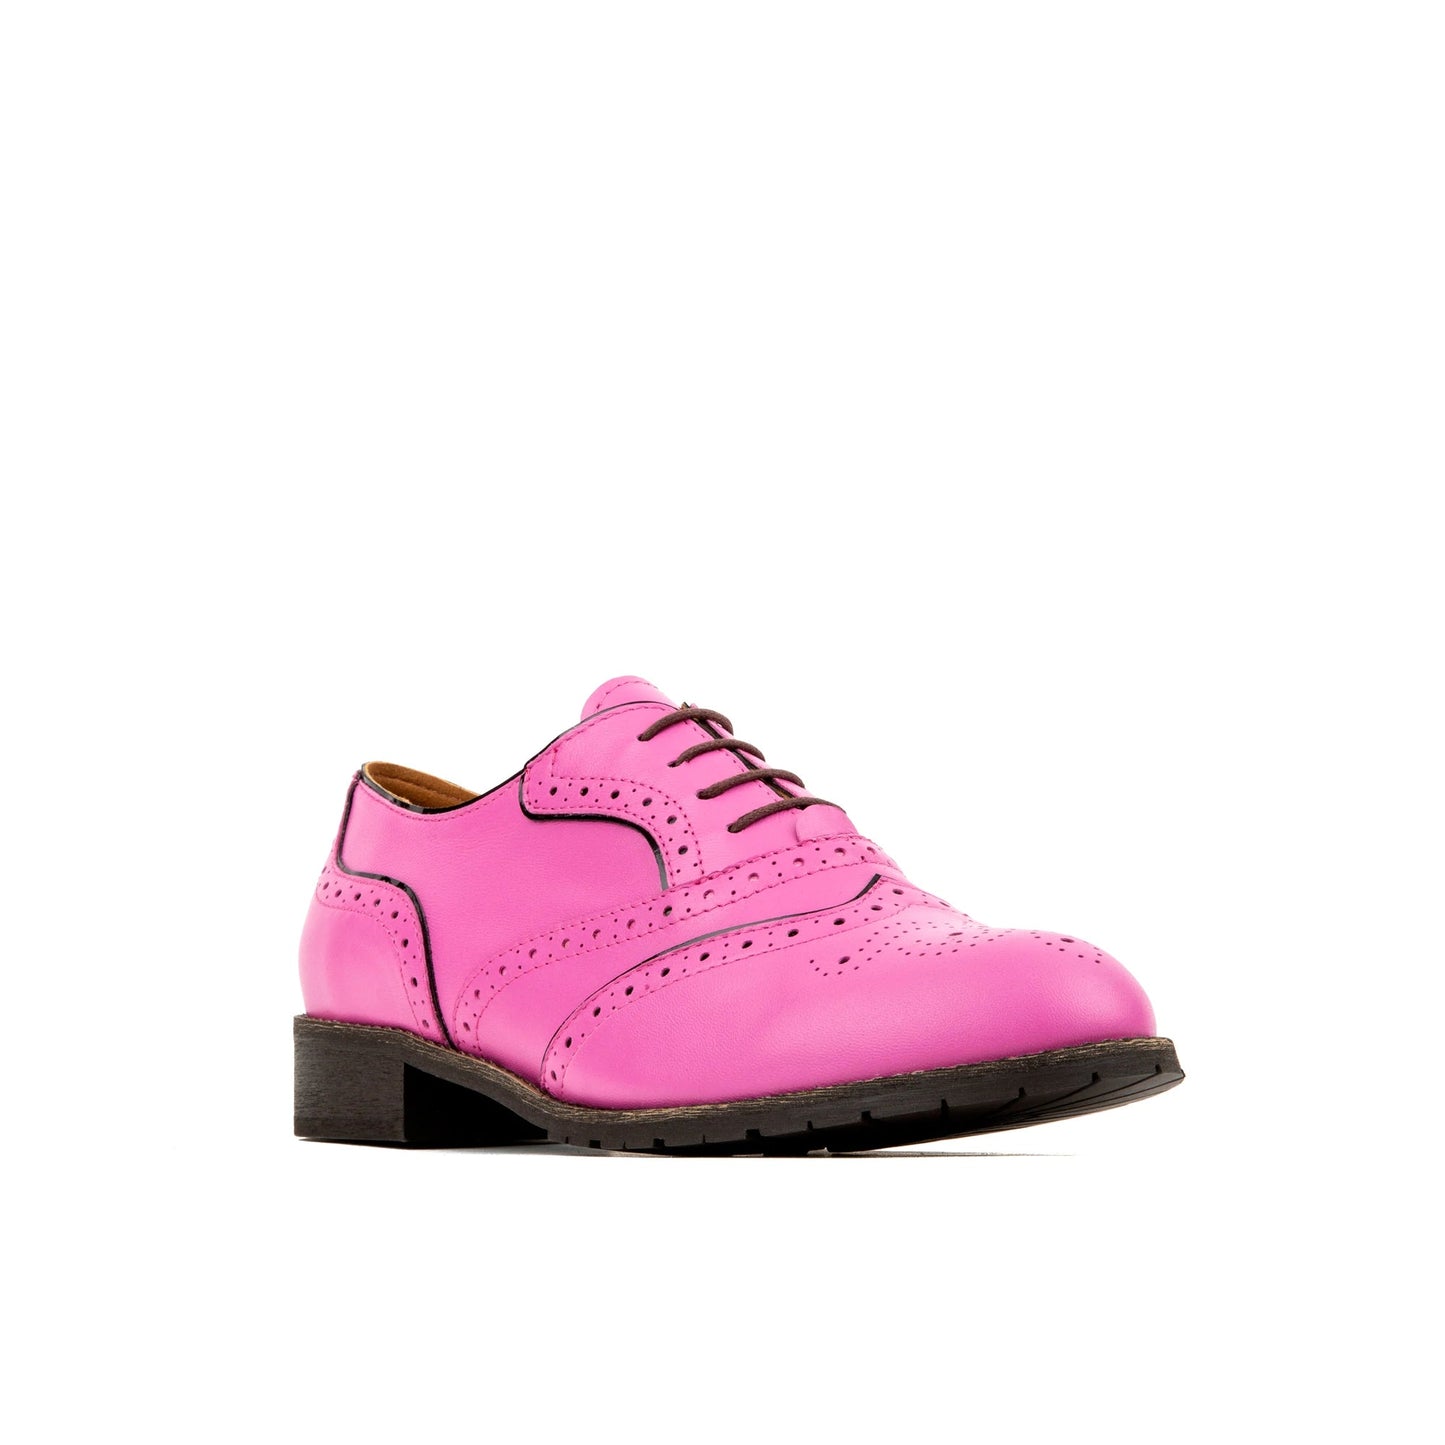 Brick Lane - Pink Shoes Embassy London 